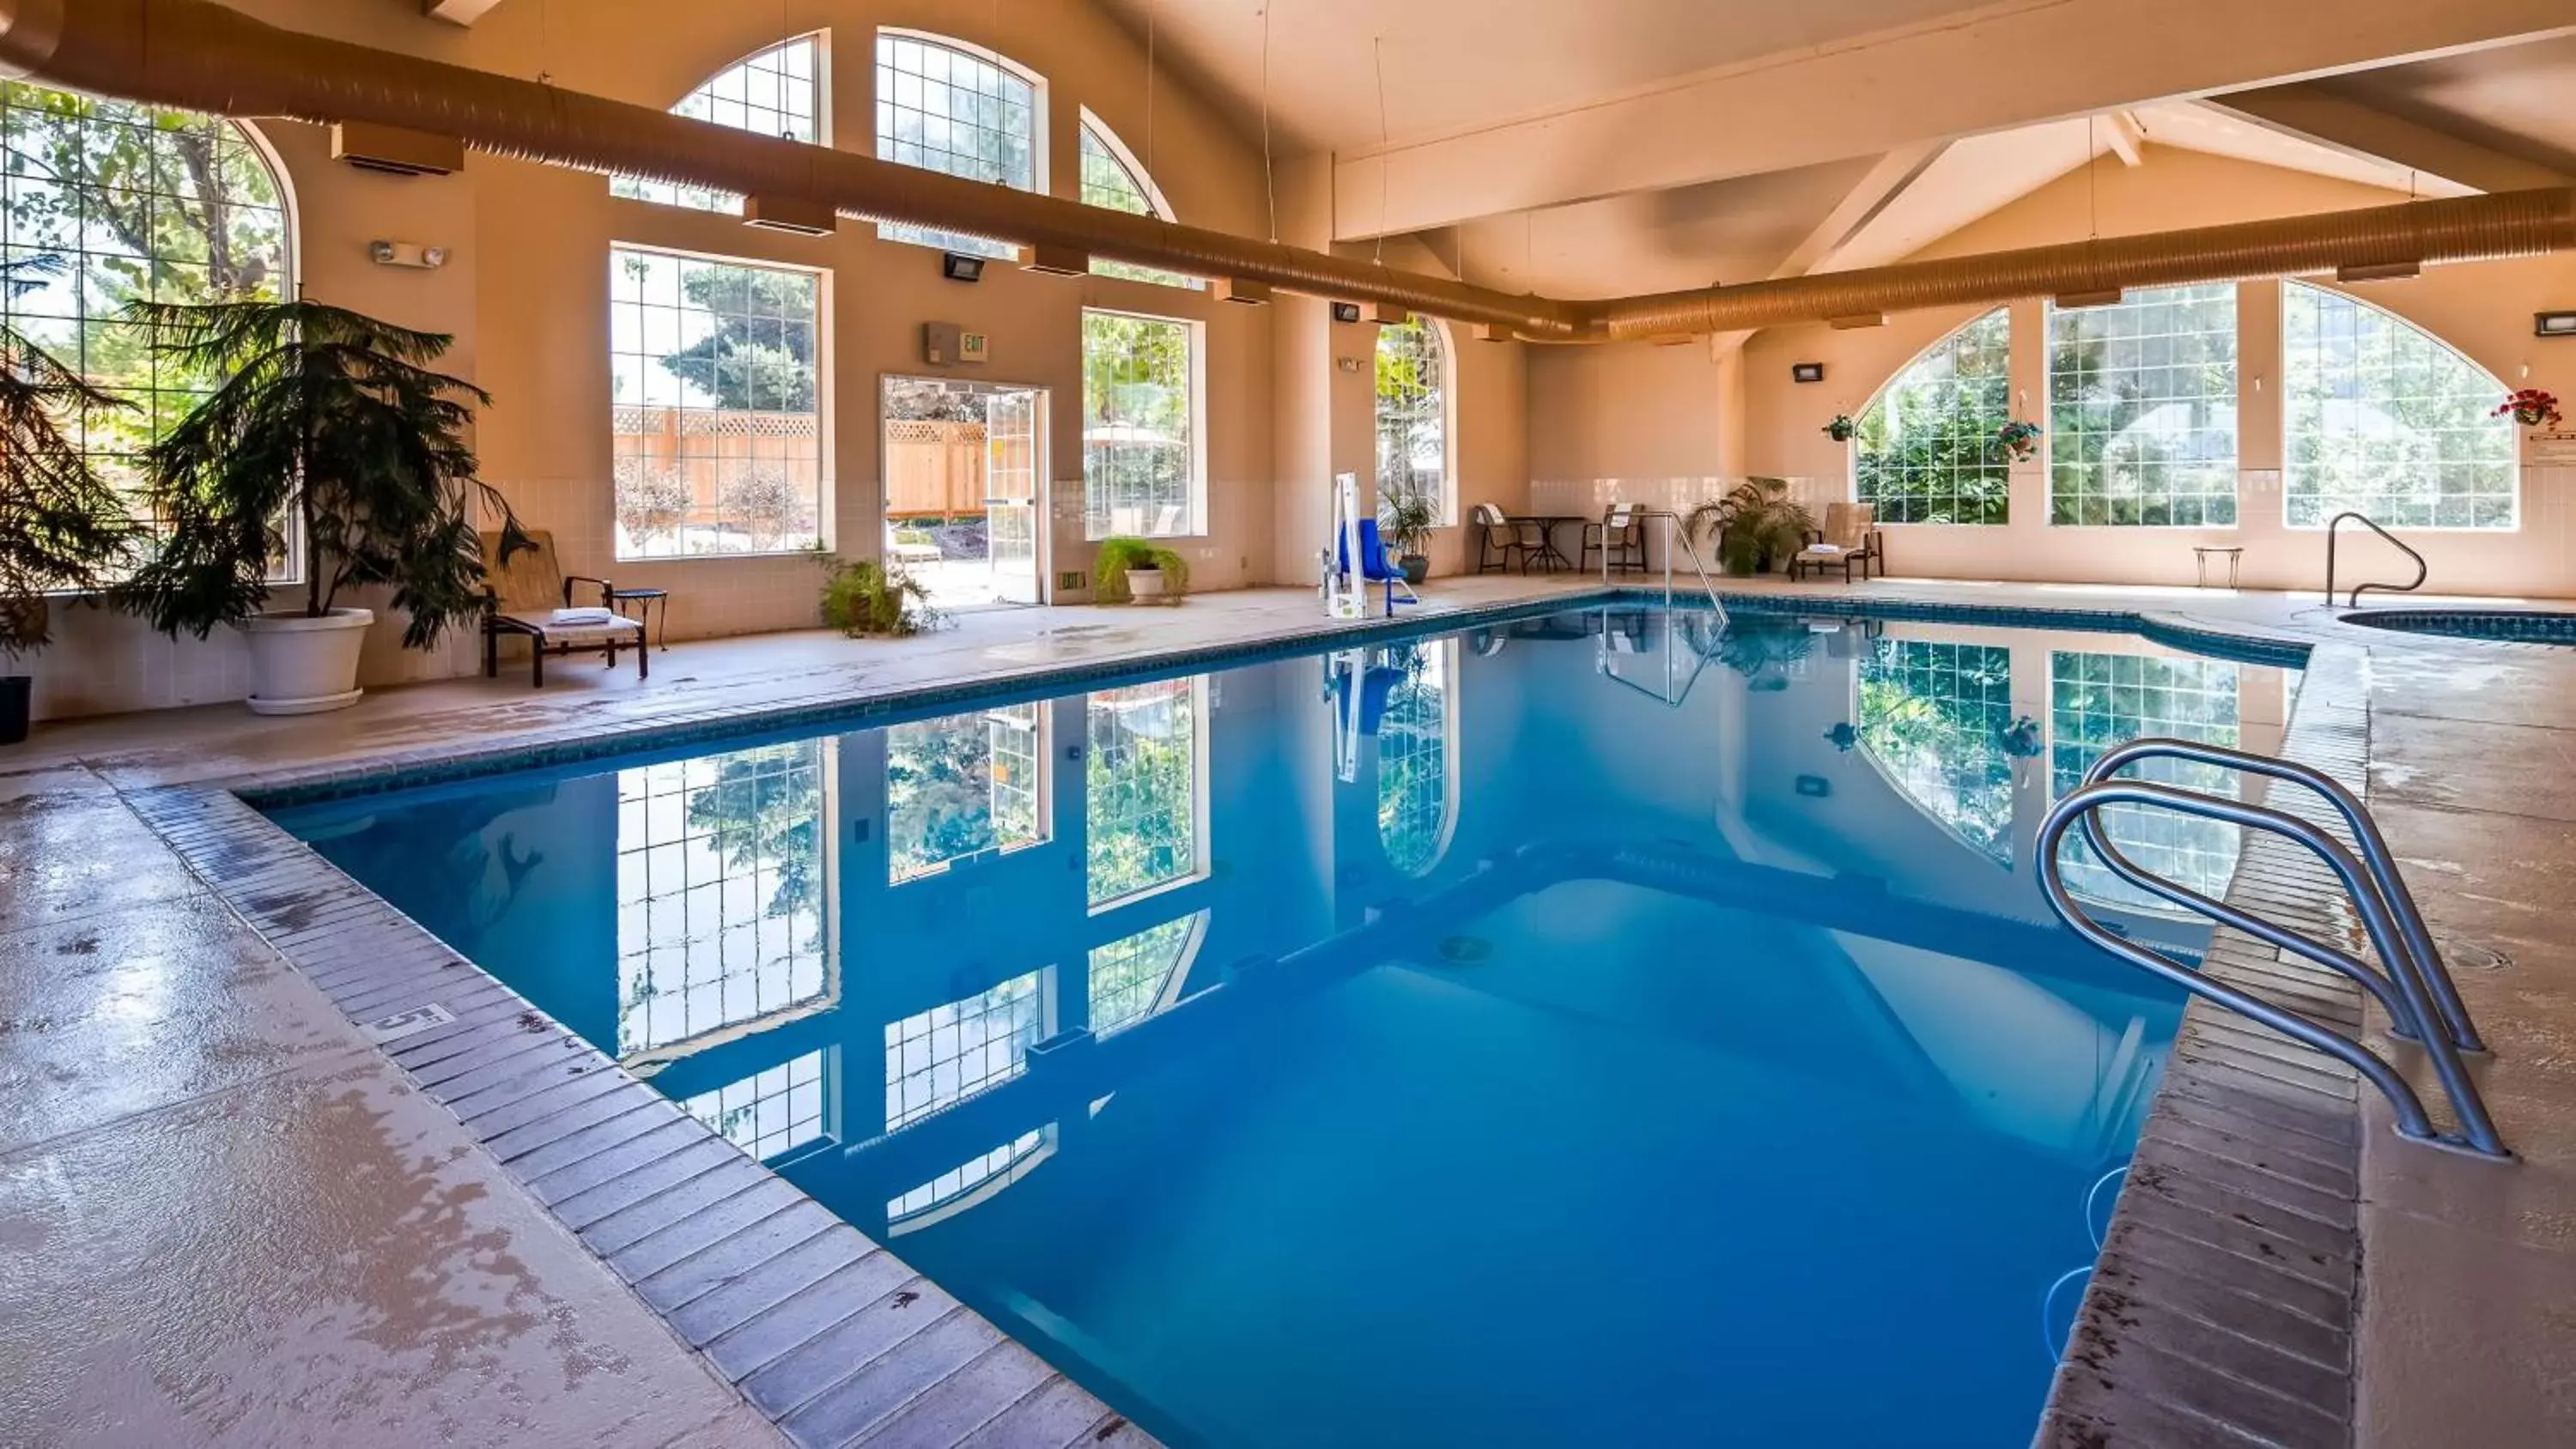 On site, Swimming Pool in Best Western Plus Caldwell Inn & Suites